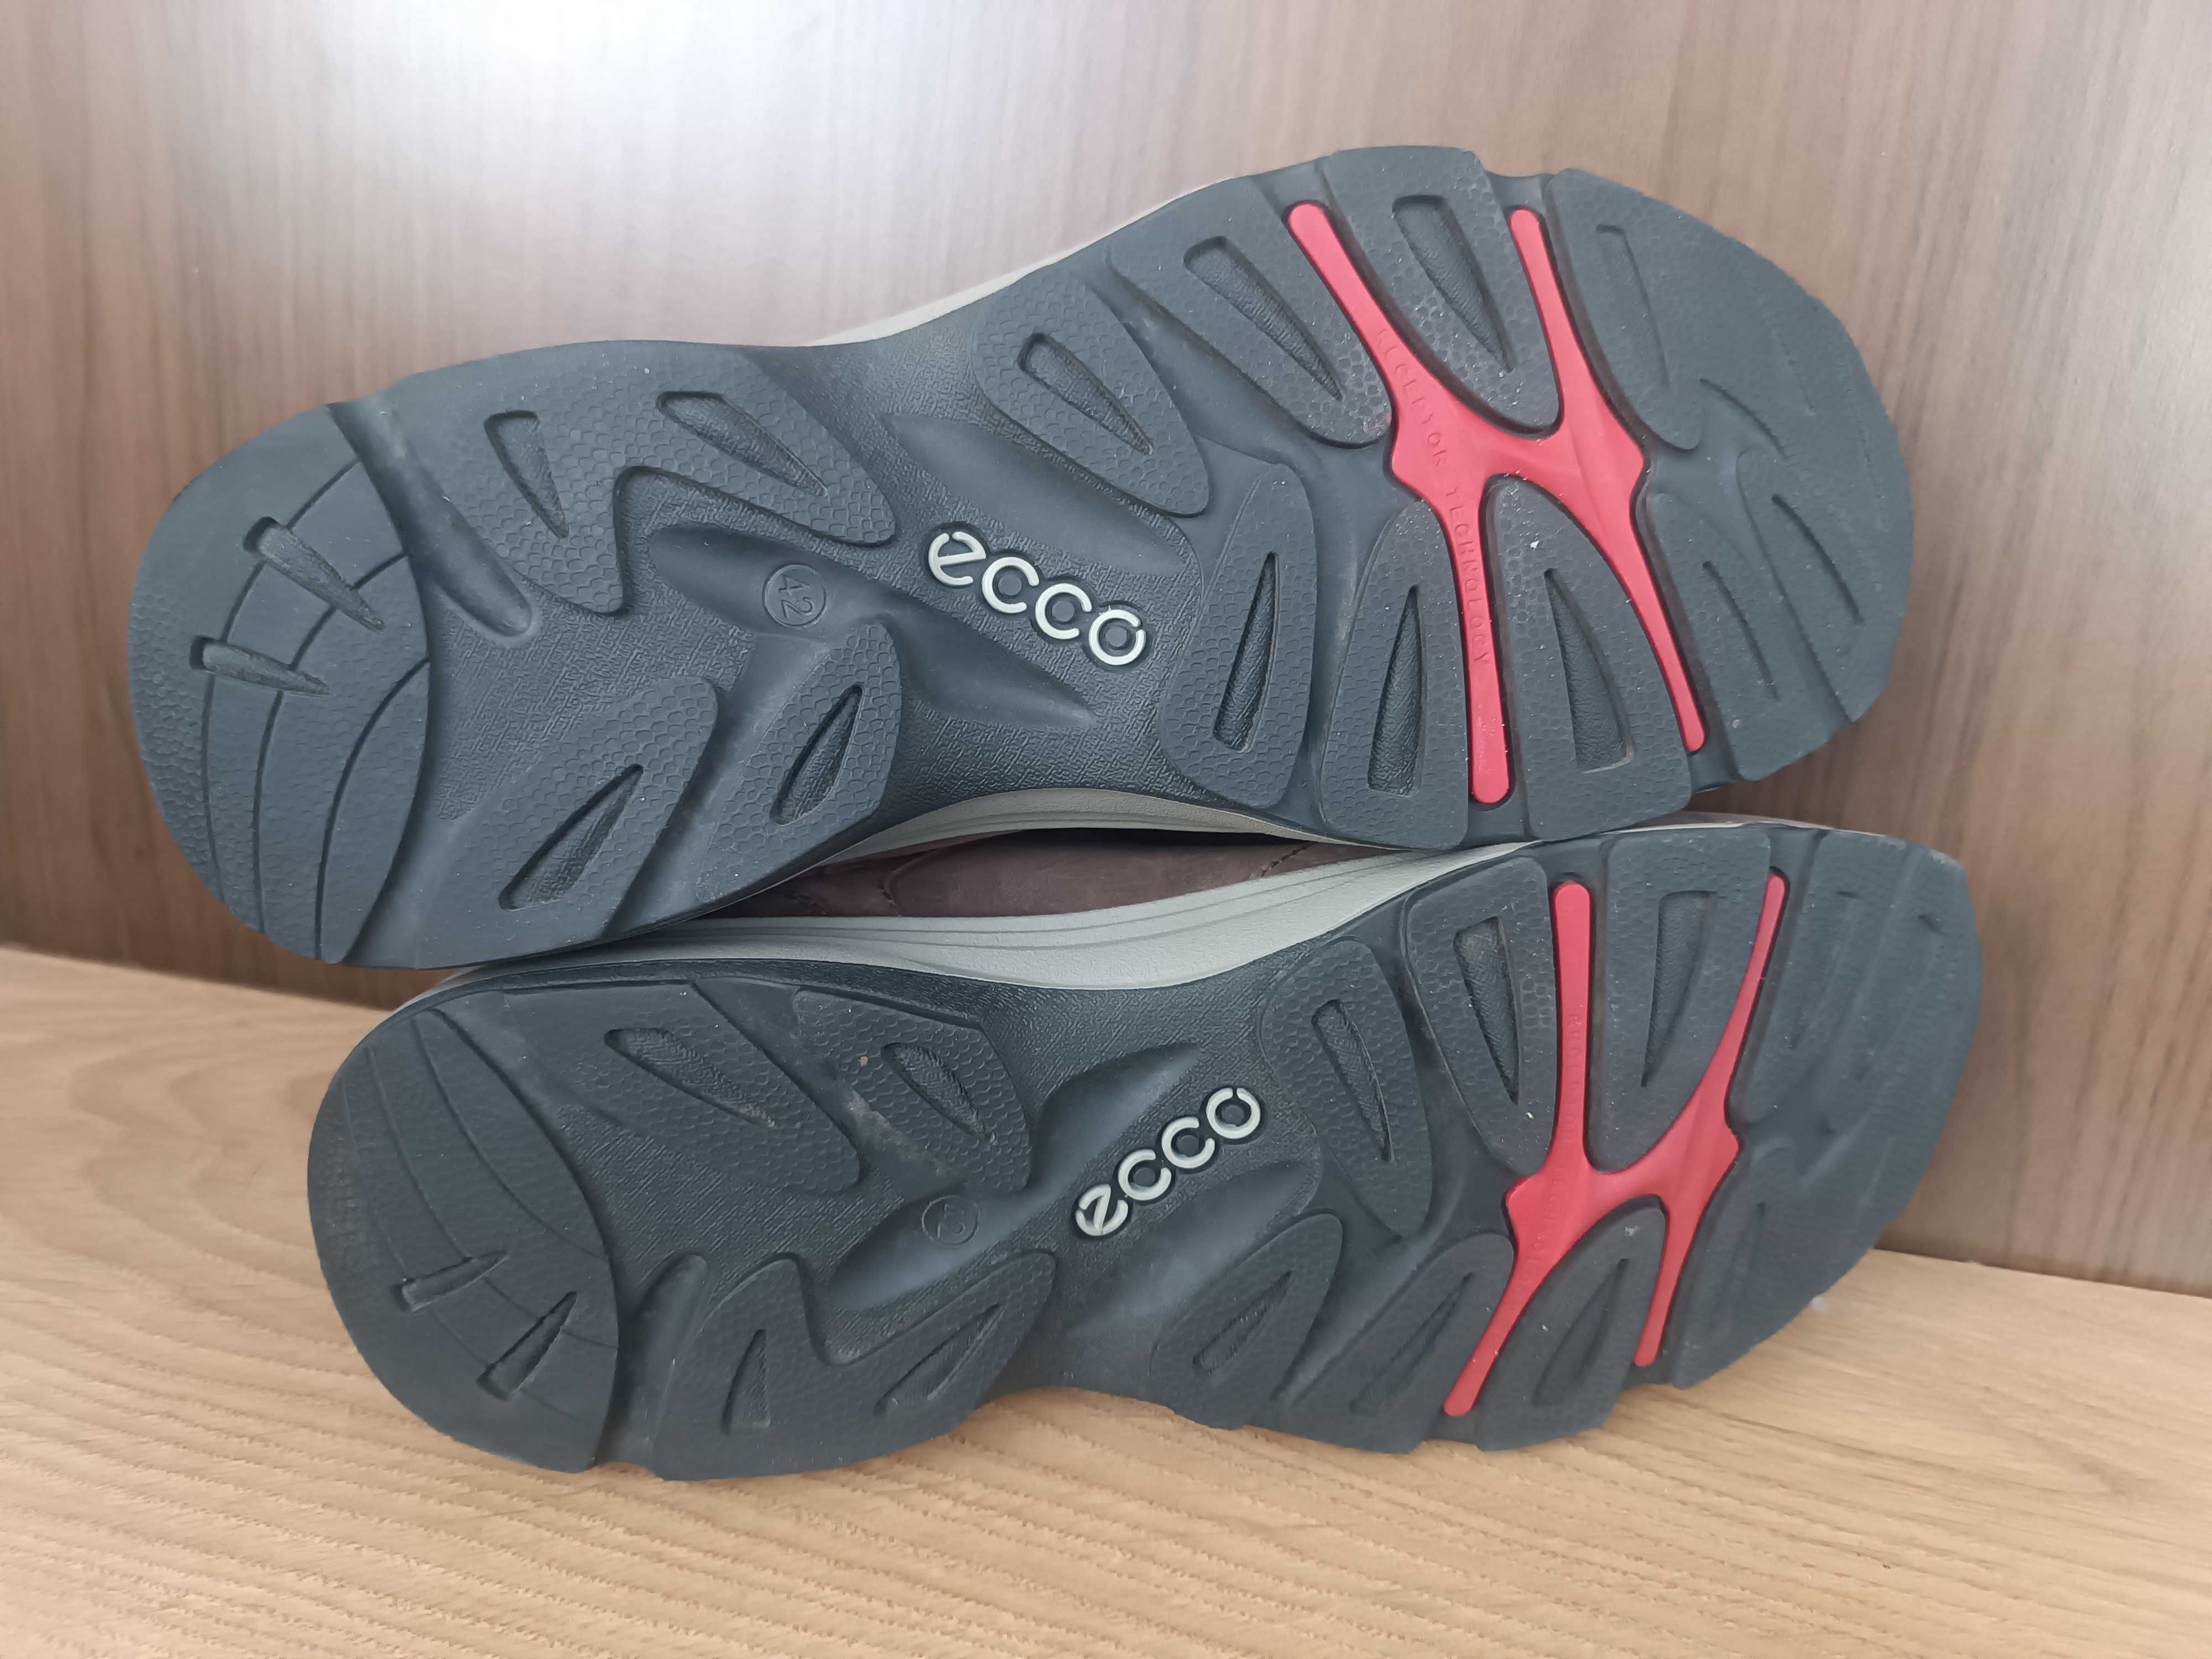 Ботинки новые Ecco receptor 42 размер 27 27.5 см кожа